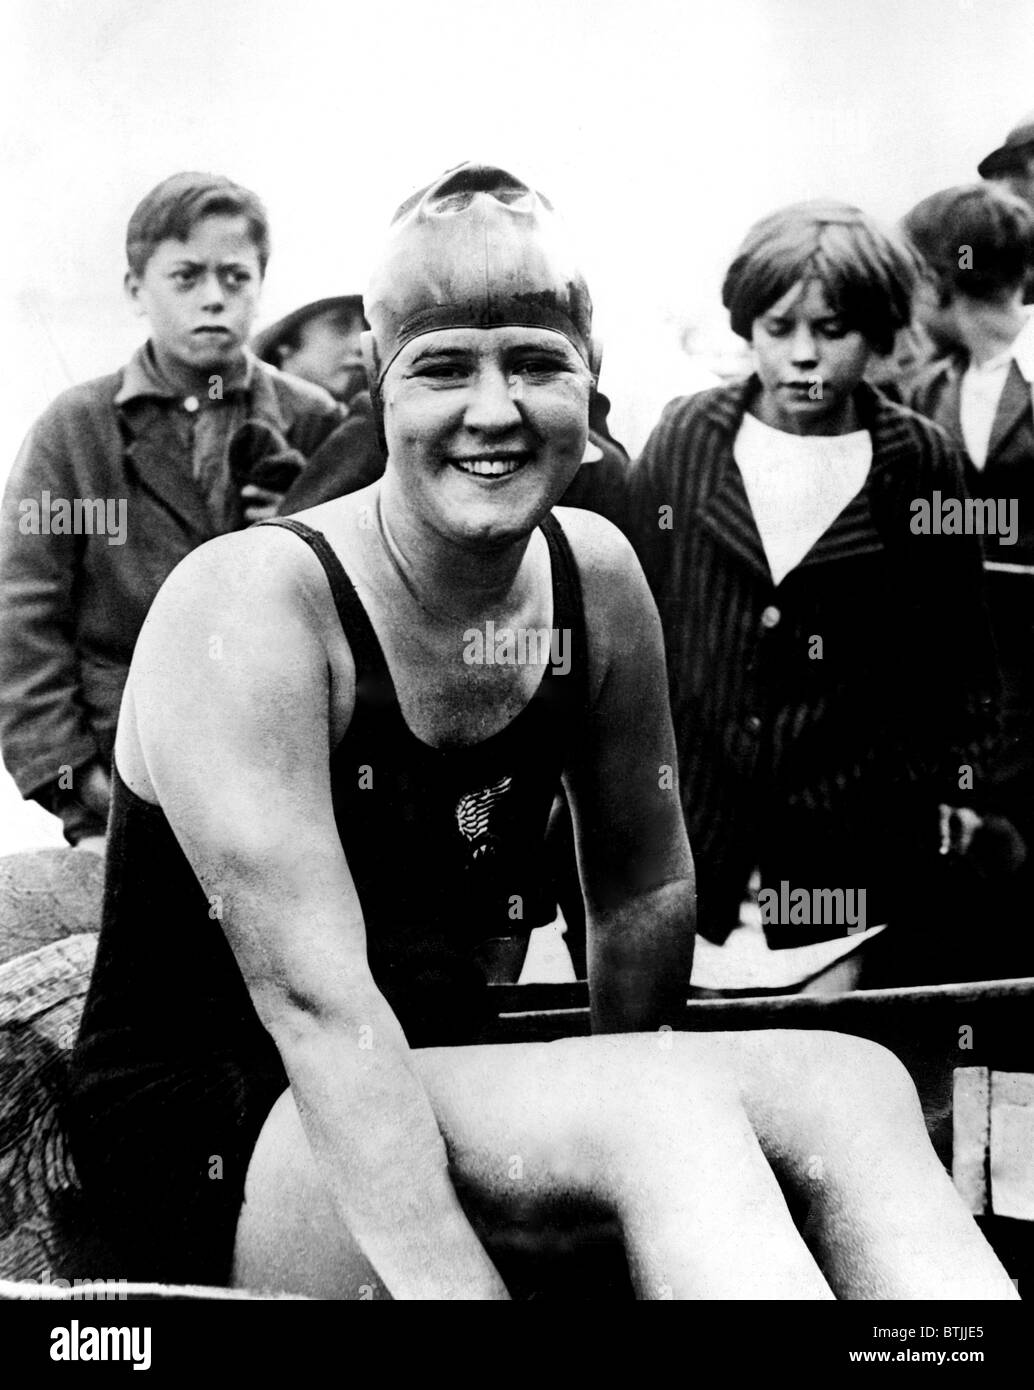 GERTRUDE EDERLE, nach den Rekord für die erste Frau den Ärmelkanal schwimmen  1926 Stockfotografie - Alamy